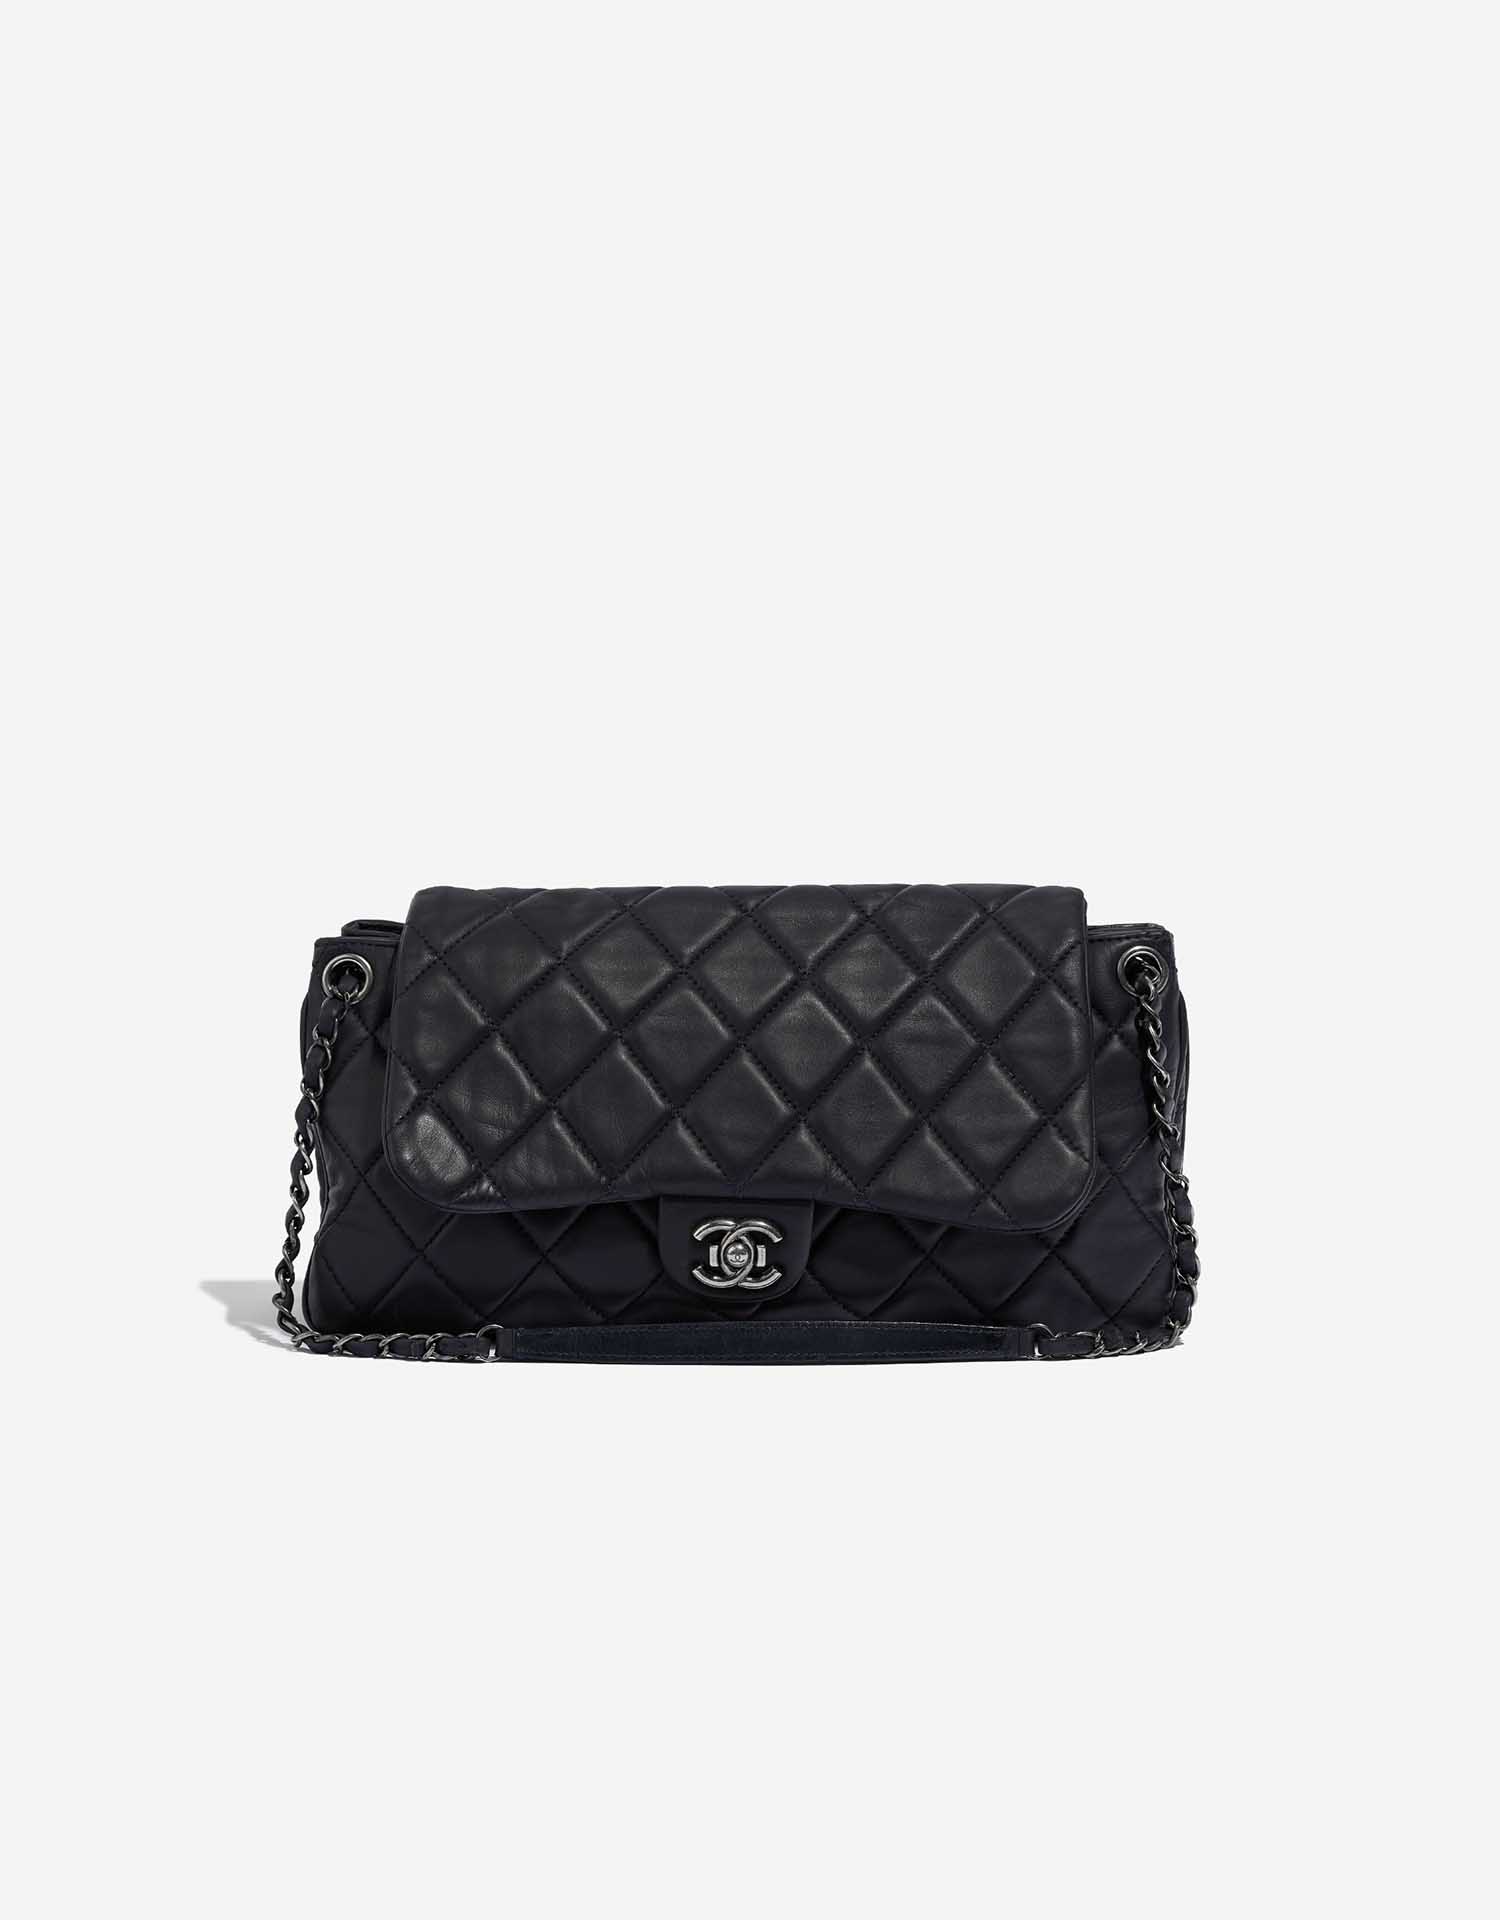 Handbags Chanel Chanel Classic Maxi 13 2.55 Flap Chain Shoulder Bag Black Lamb